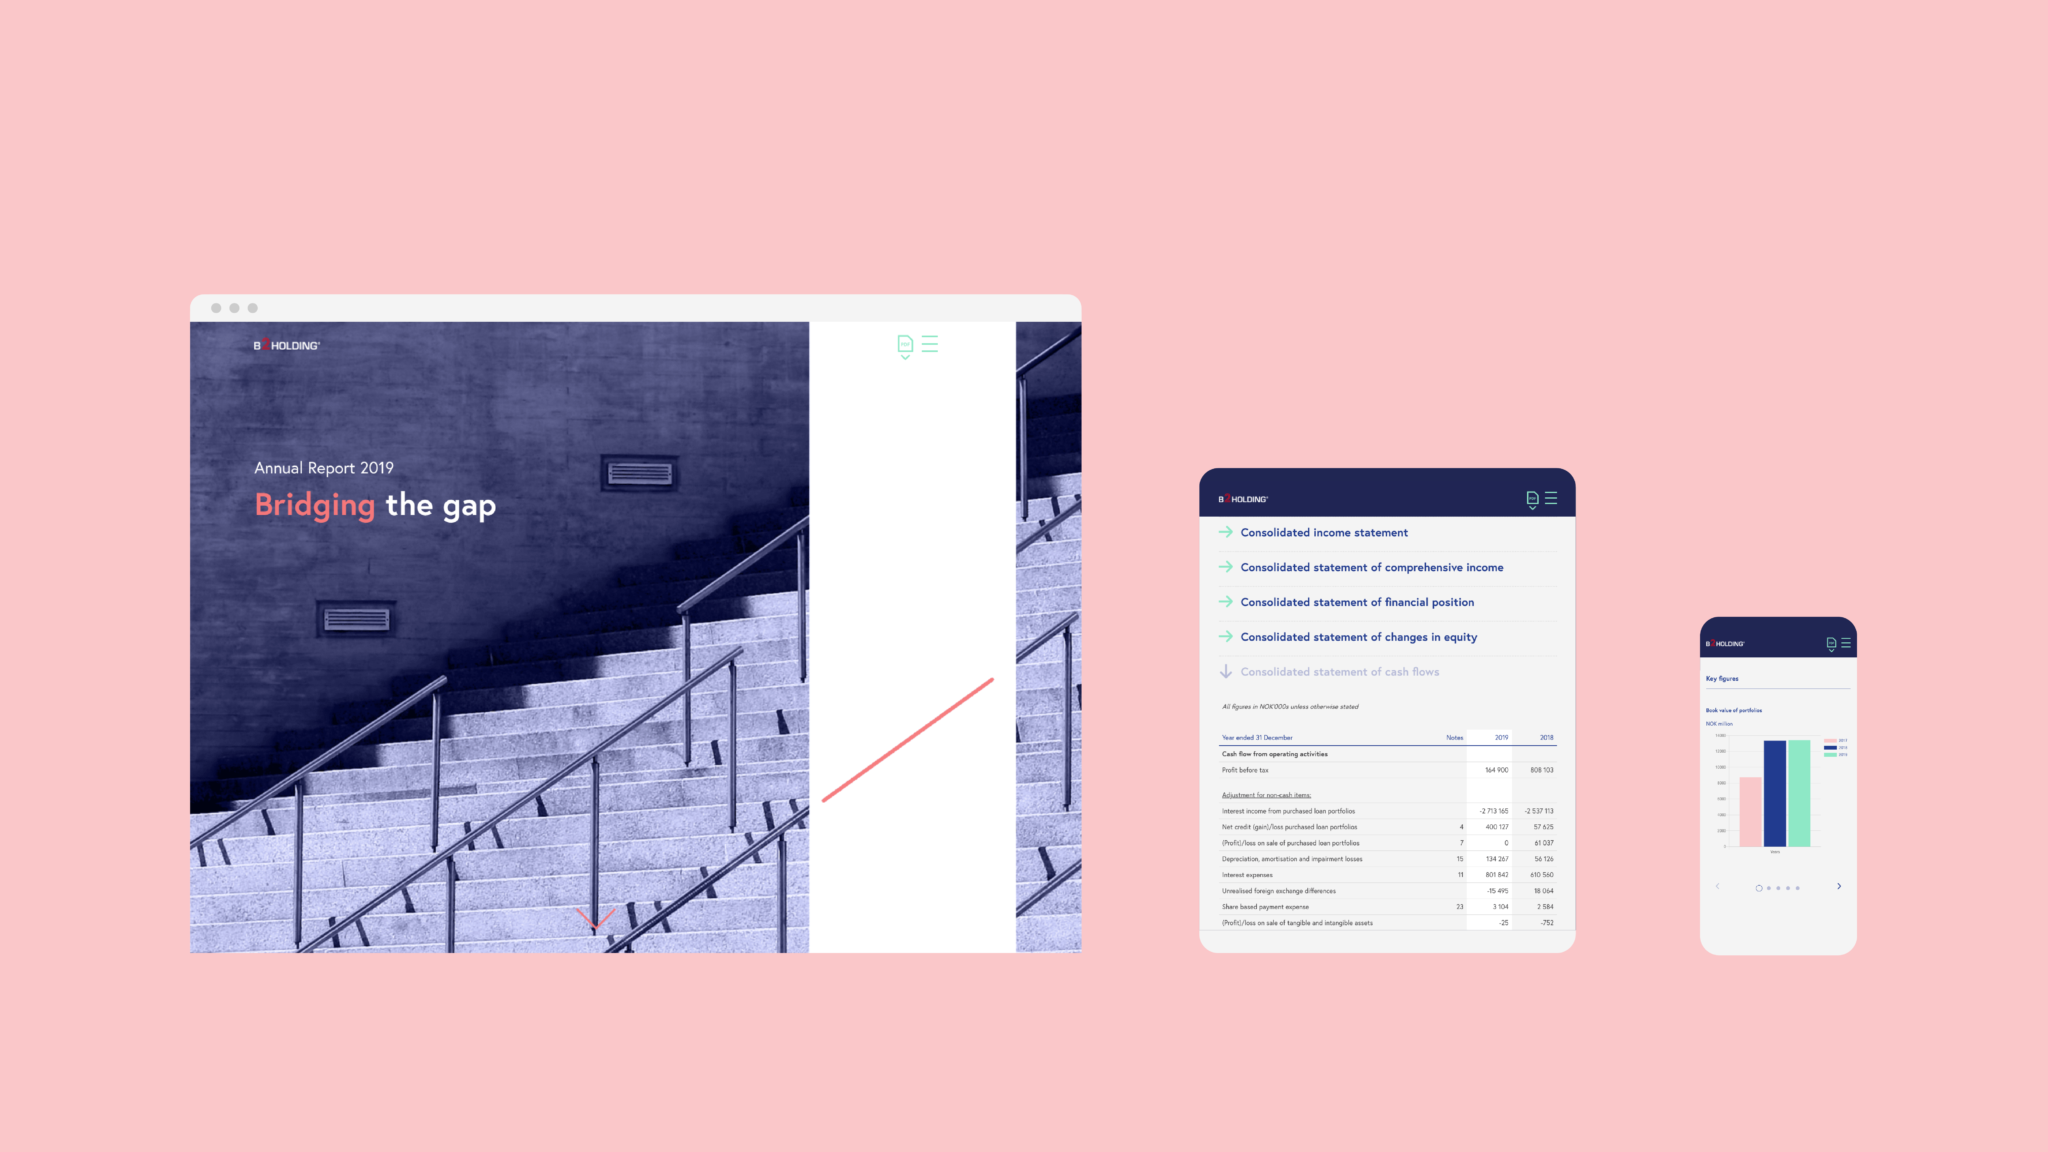 B2Holding digitale årsrapport vist på desktop, tablet og smarttelefon